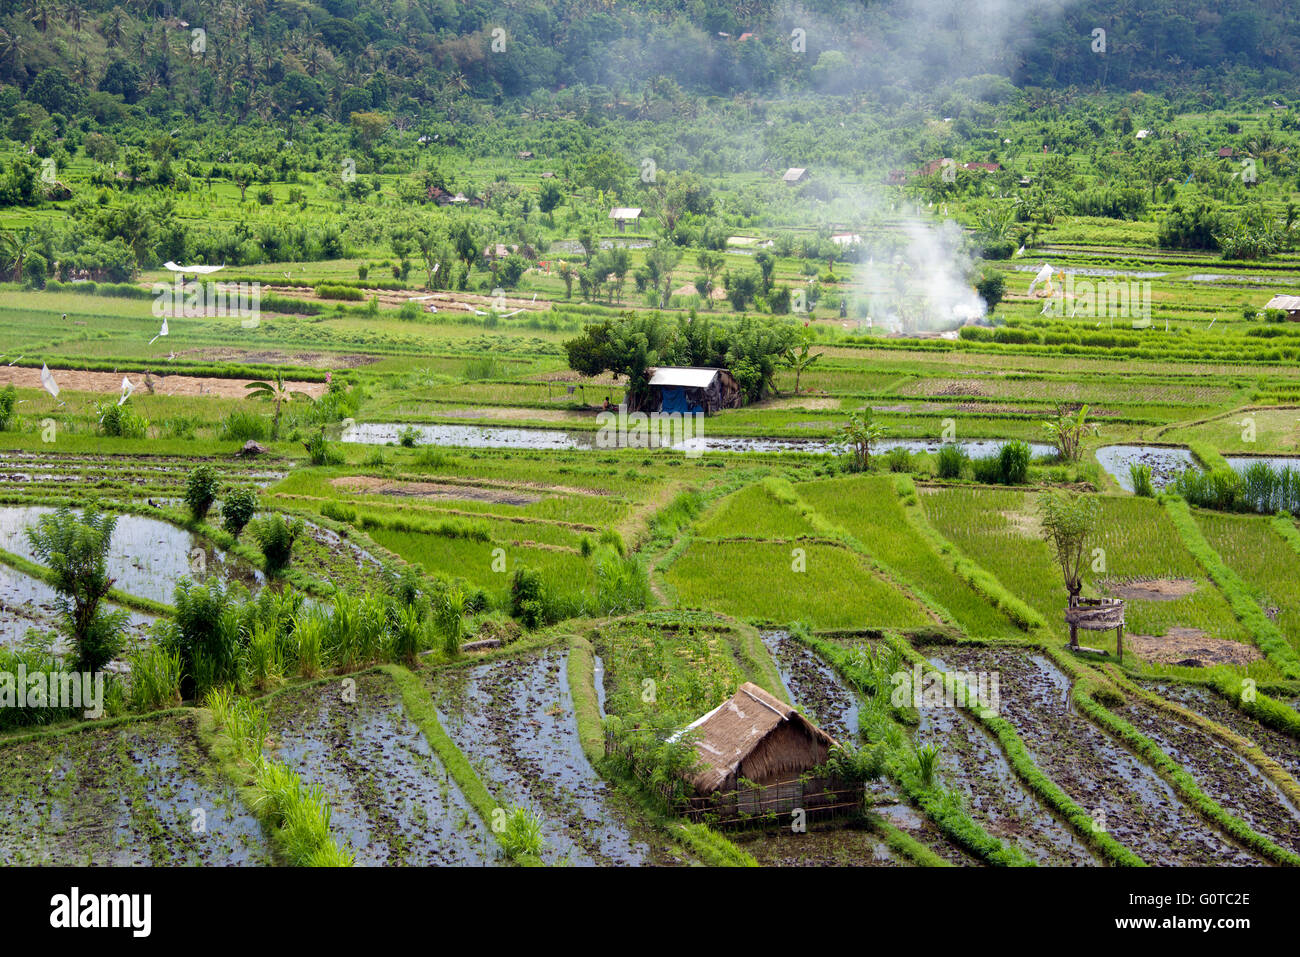 Ländliche Landschaft mit Reisfeldern Abang Bali Indonesien Stockfoto